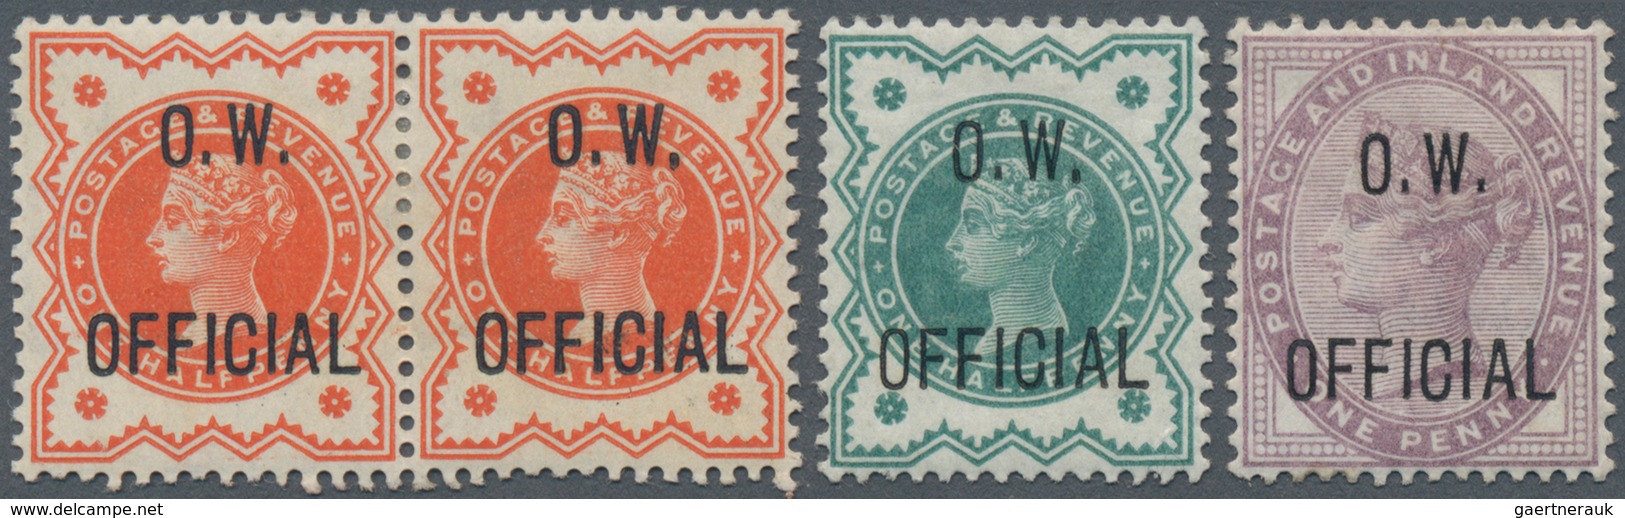 Großbritannien - Dienstmarken: 1896/1902, Office Of Works, QV ½d. Orange Horizontal Pair, ½d. Blue-g - Dienstzegels